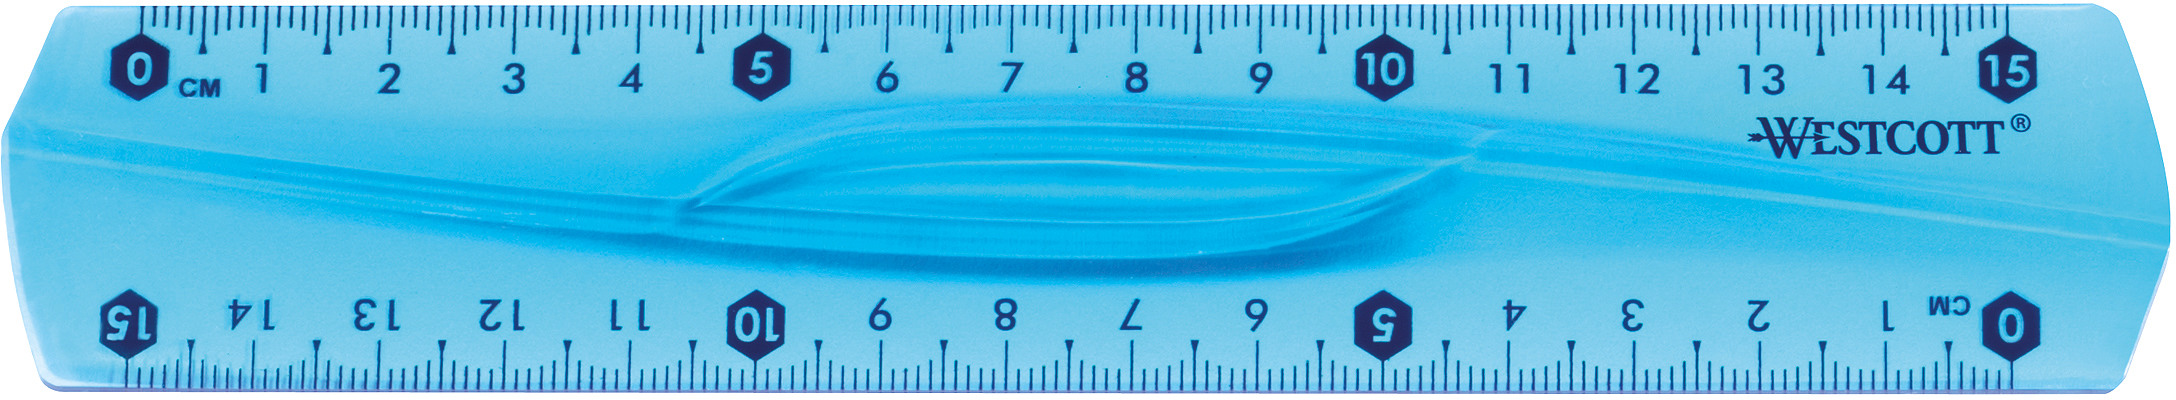 WESTCOTT Règle, élastique E-10220 00 15cm bleu/rouge/vert